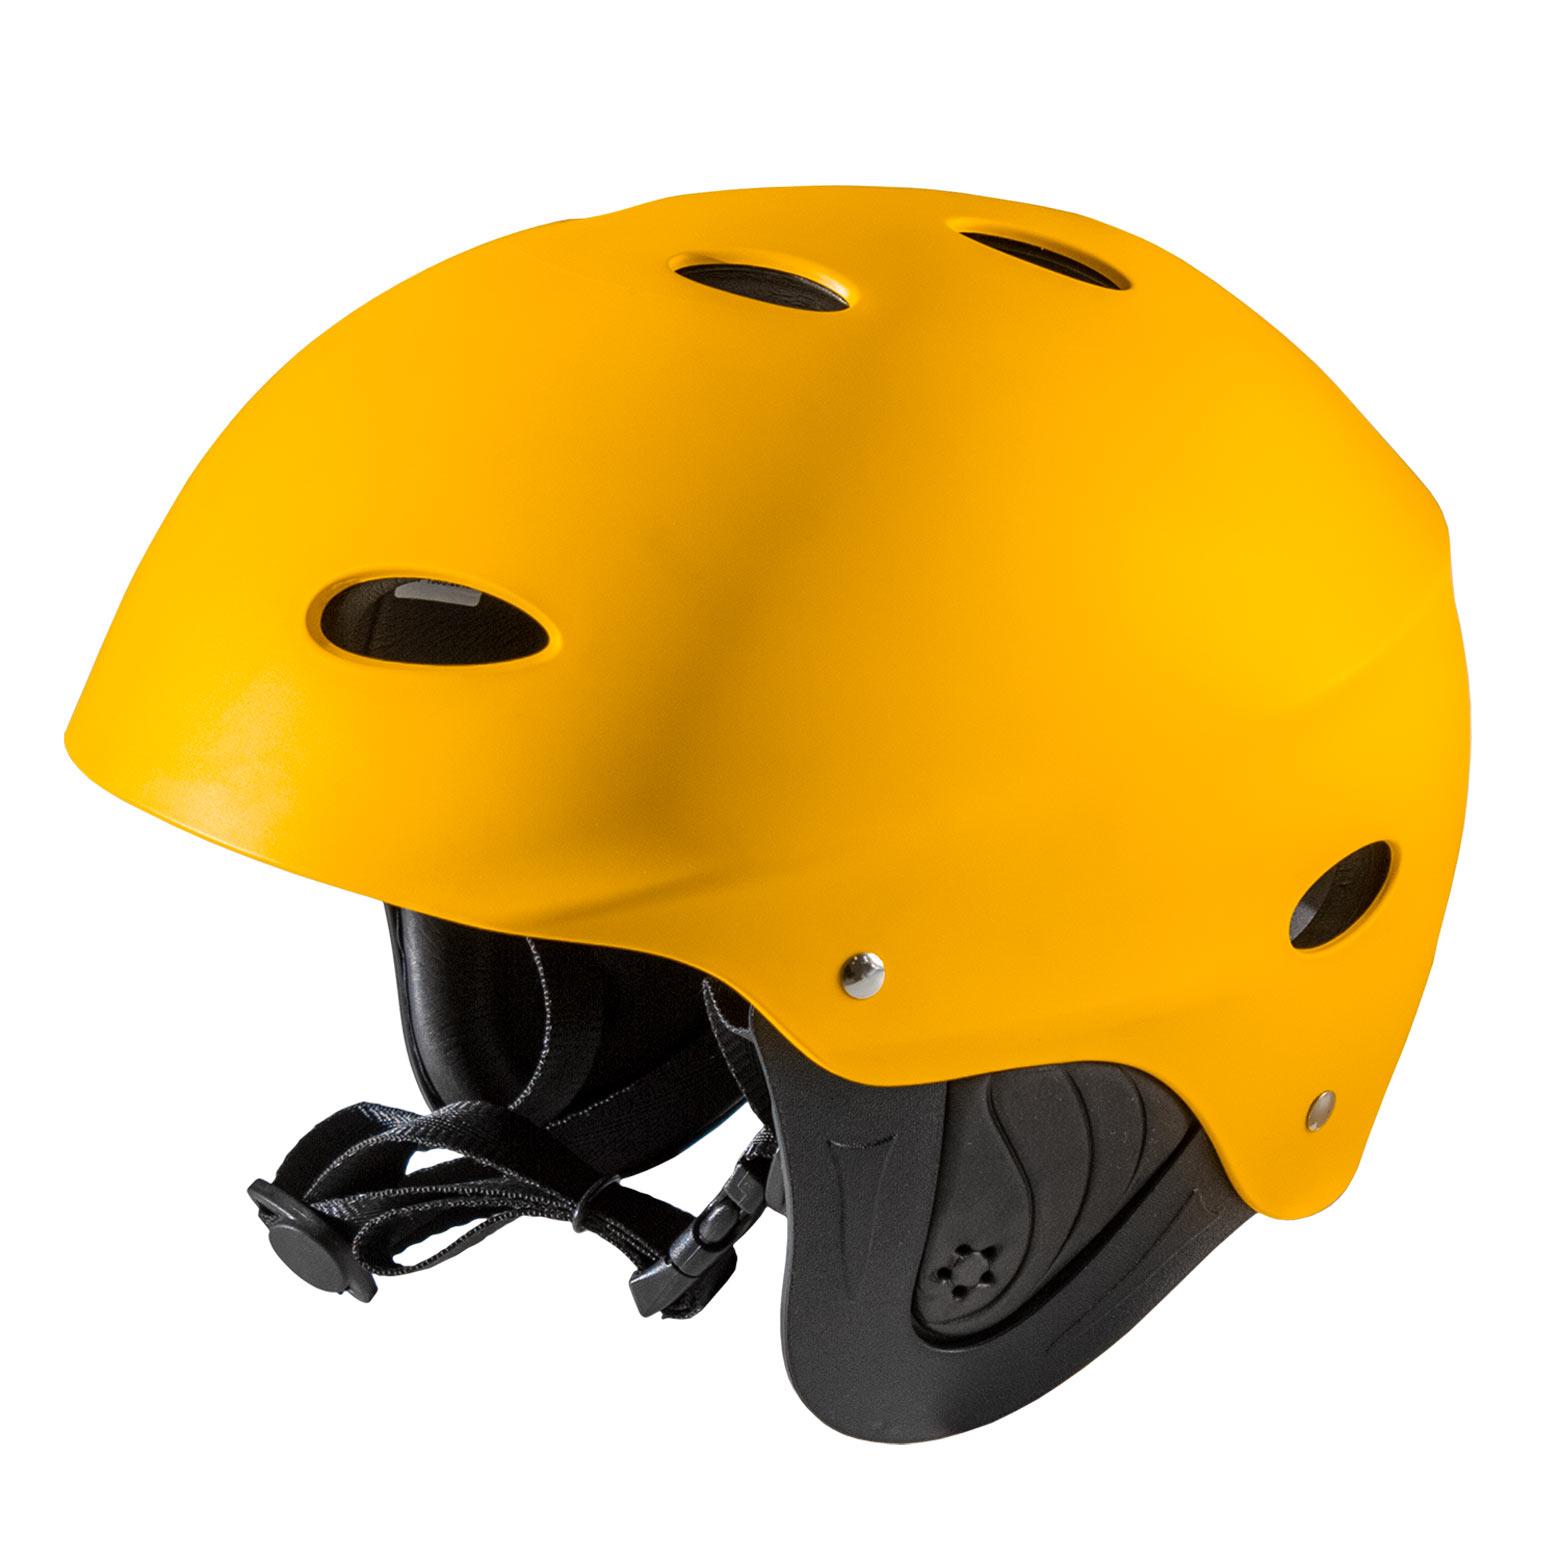 Waterfall Helmet Outdoor+ Yellow